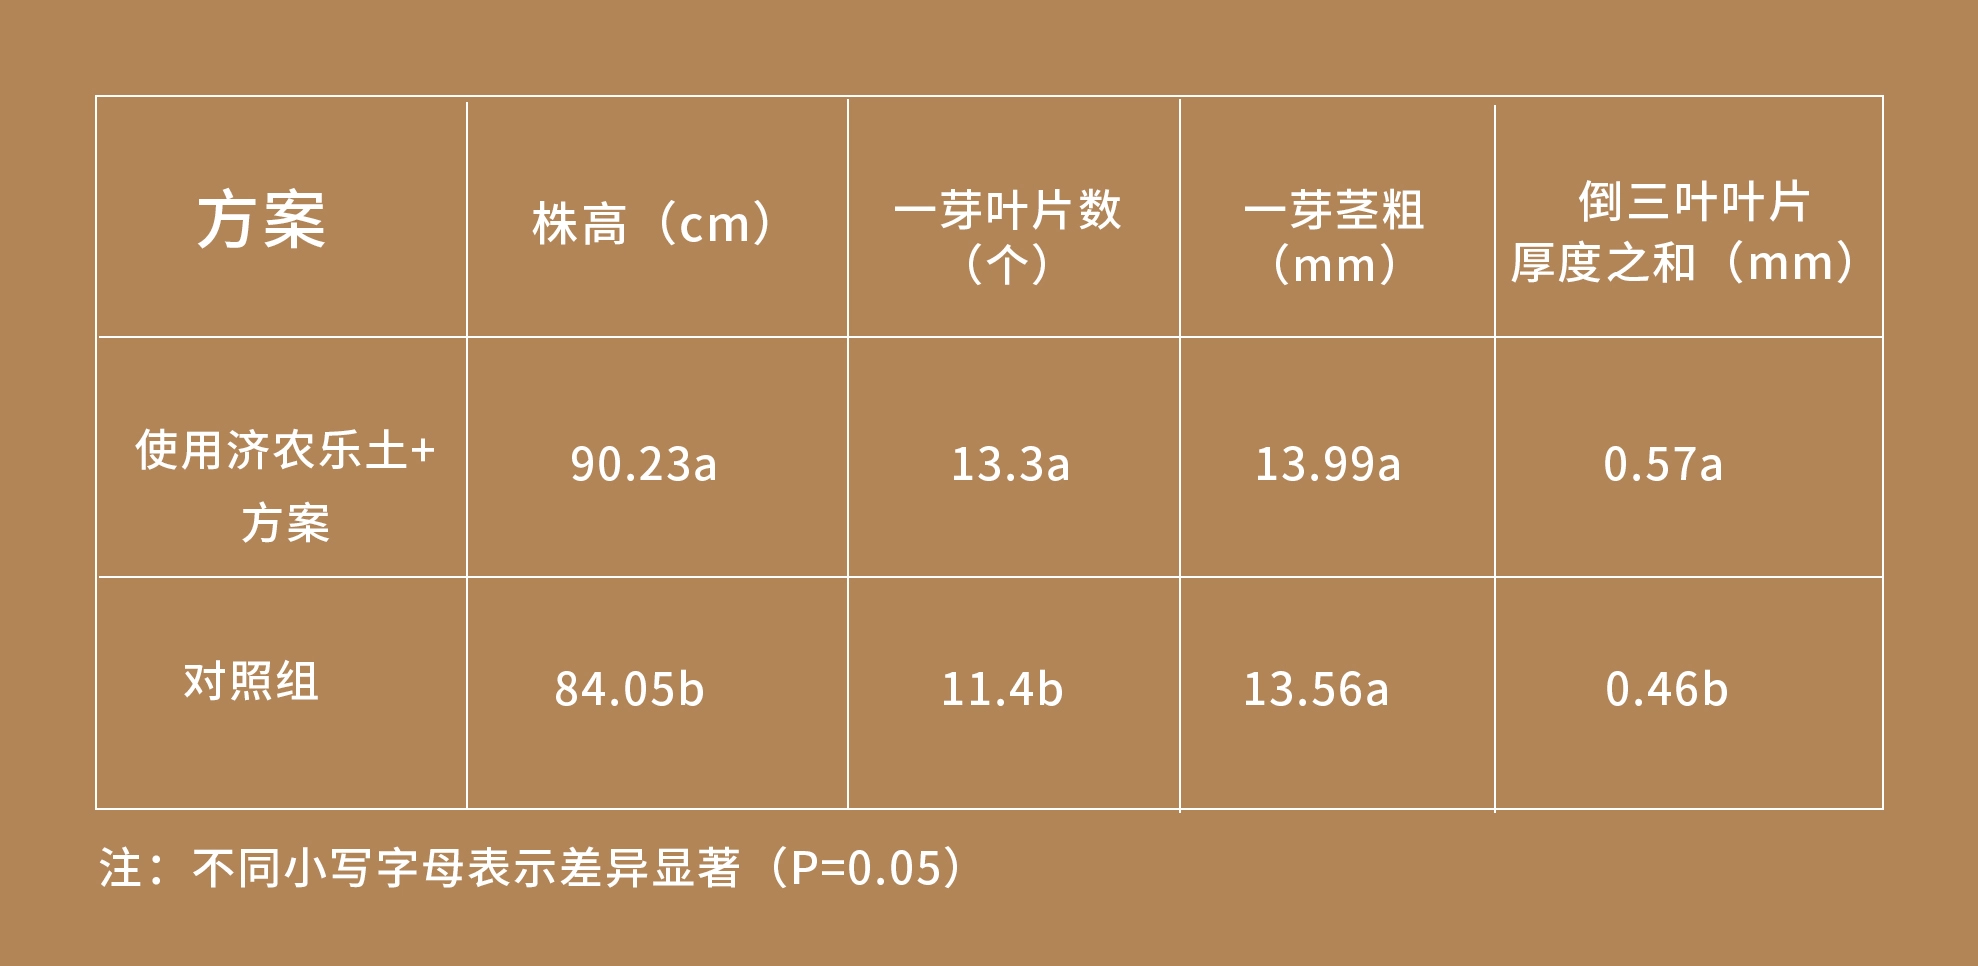 潍坊大姜使用济农乐土的效果(图5)